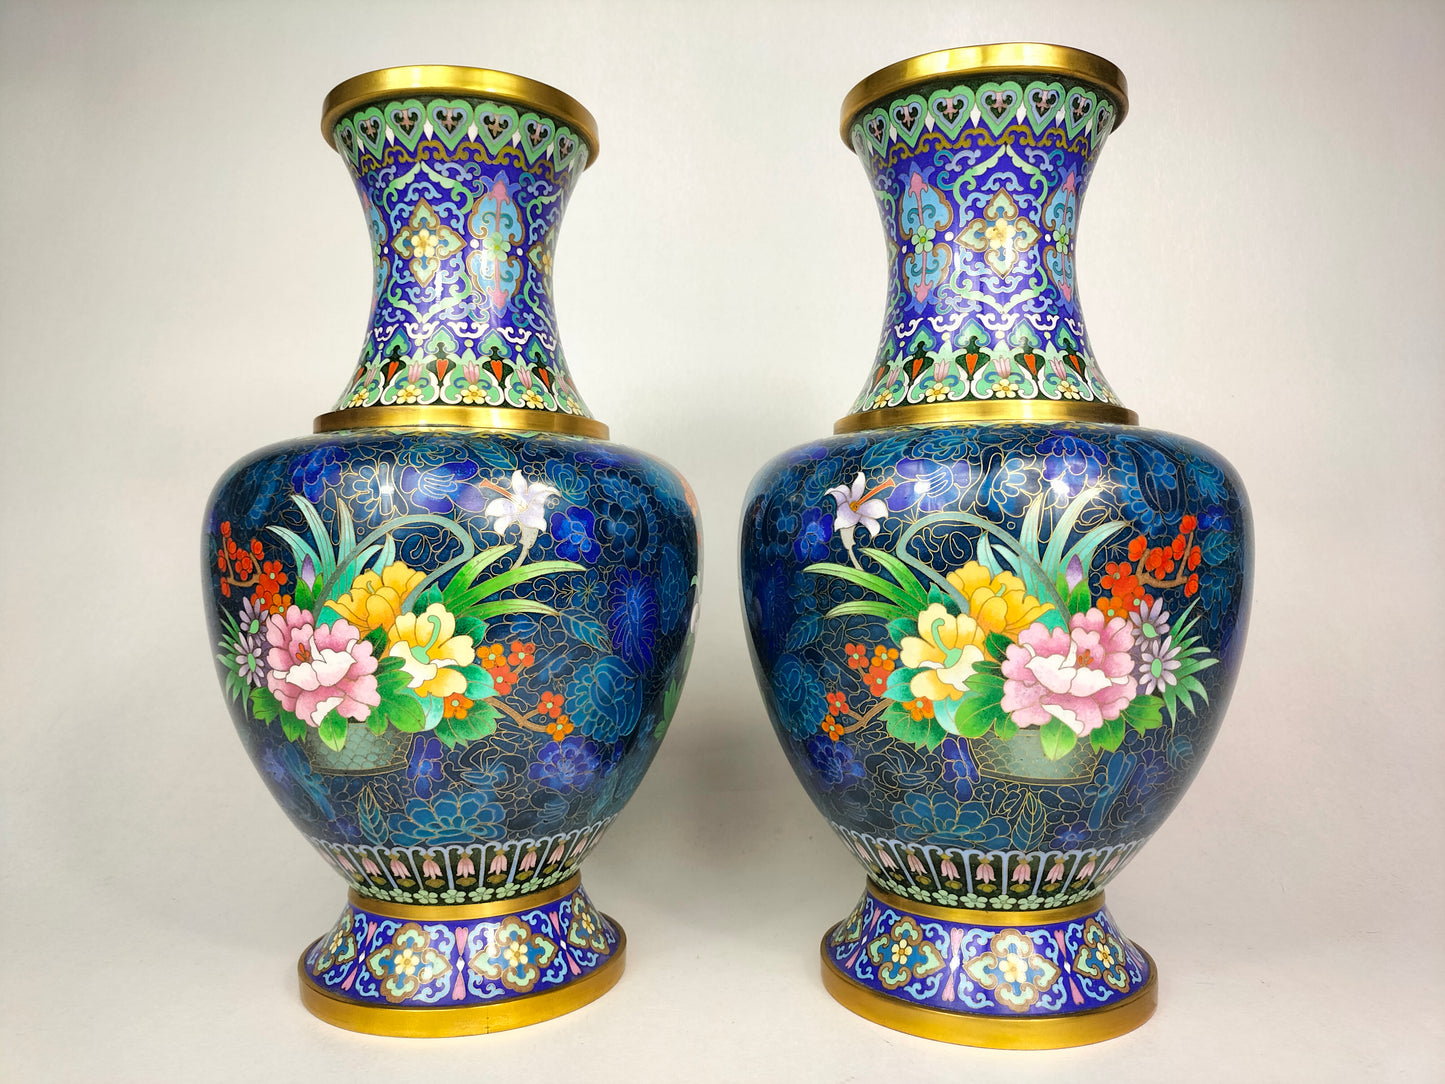 Cặp bình hoa cloisonne của Trung Quốc được trang trí bằng hoa và bướm // thế kỷ 20